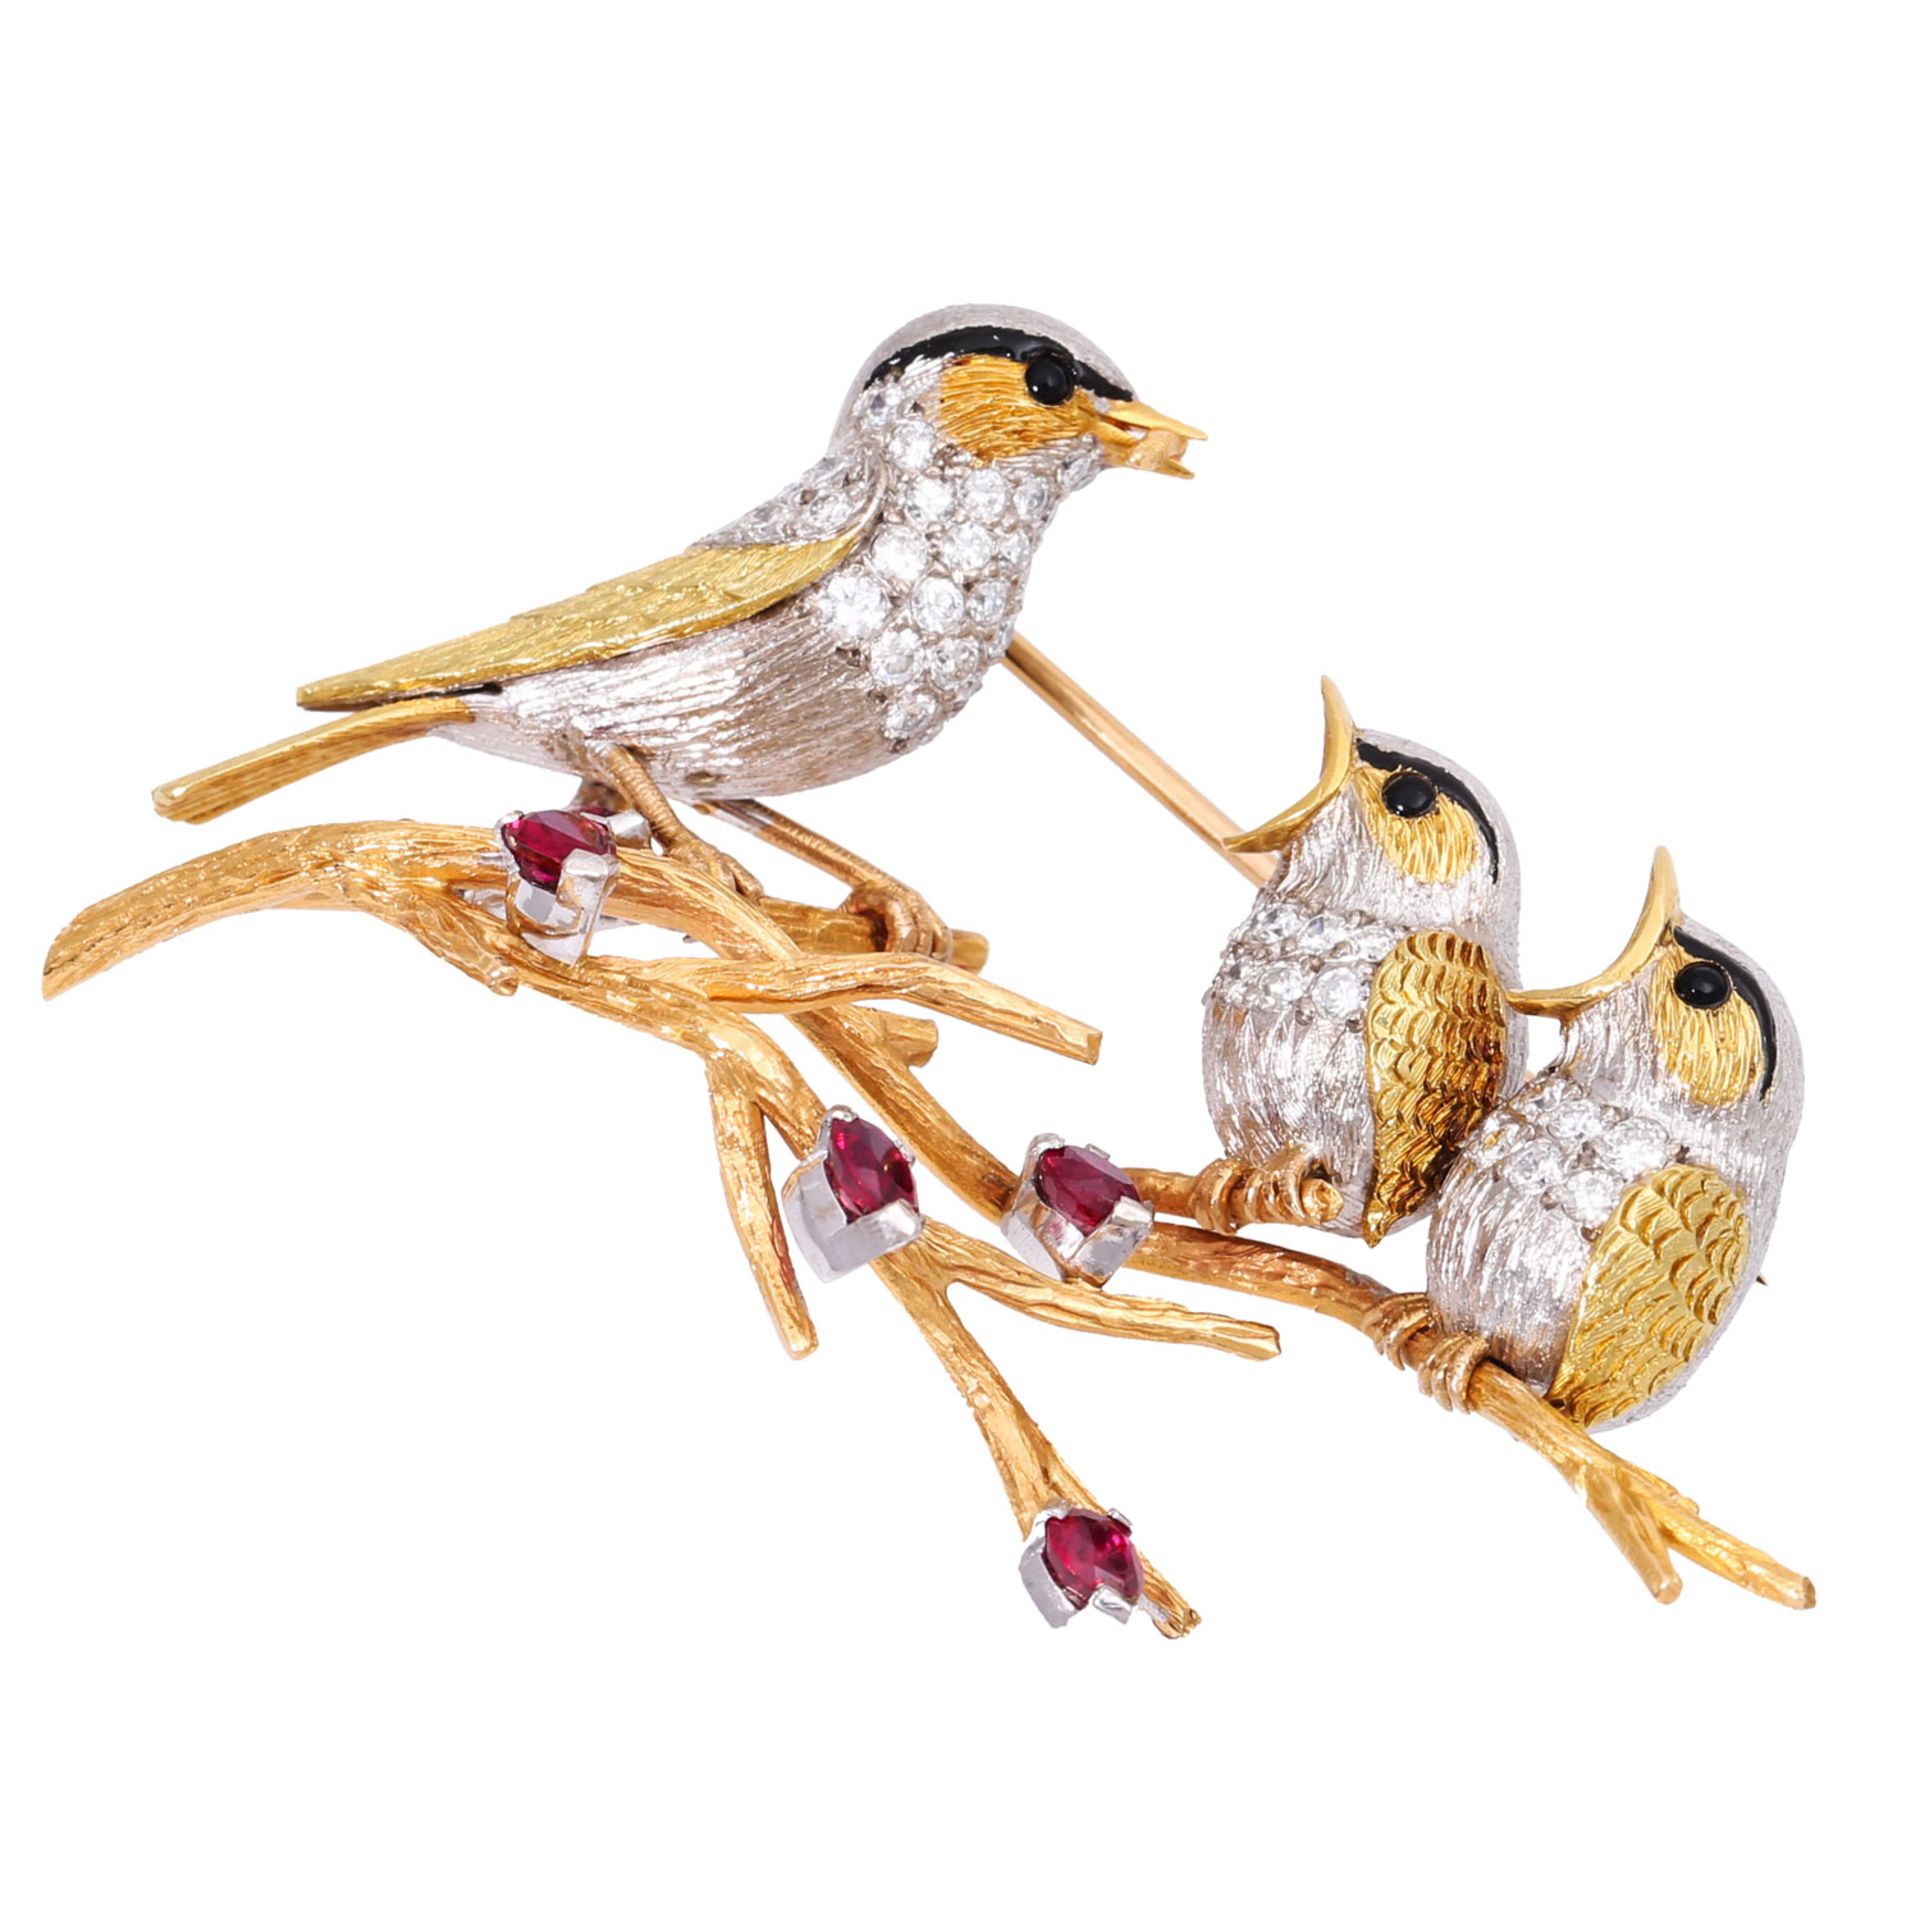 E. WOLFE & CO Brosche "Vogelfamilie" mit Brillanten zus. ca. 1,9 ct, - Bild 5 aus 11